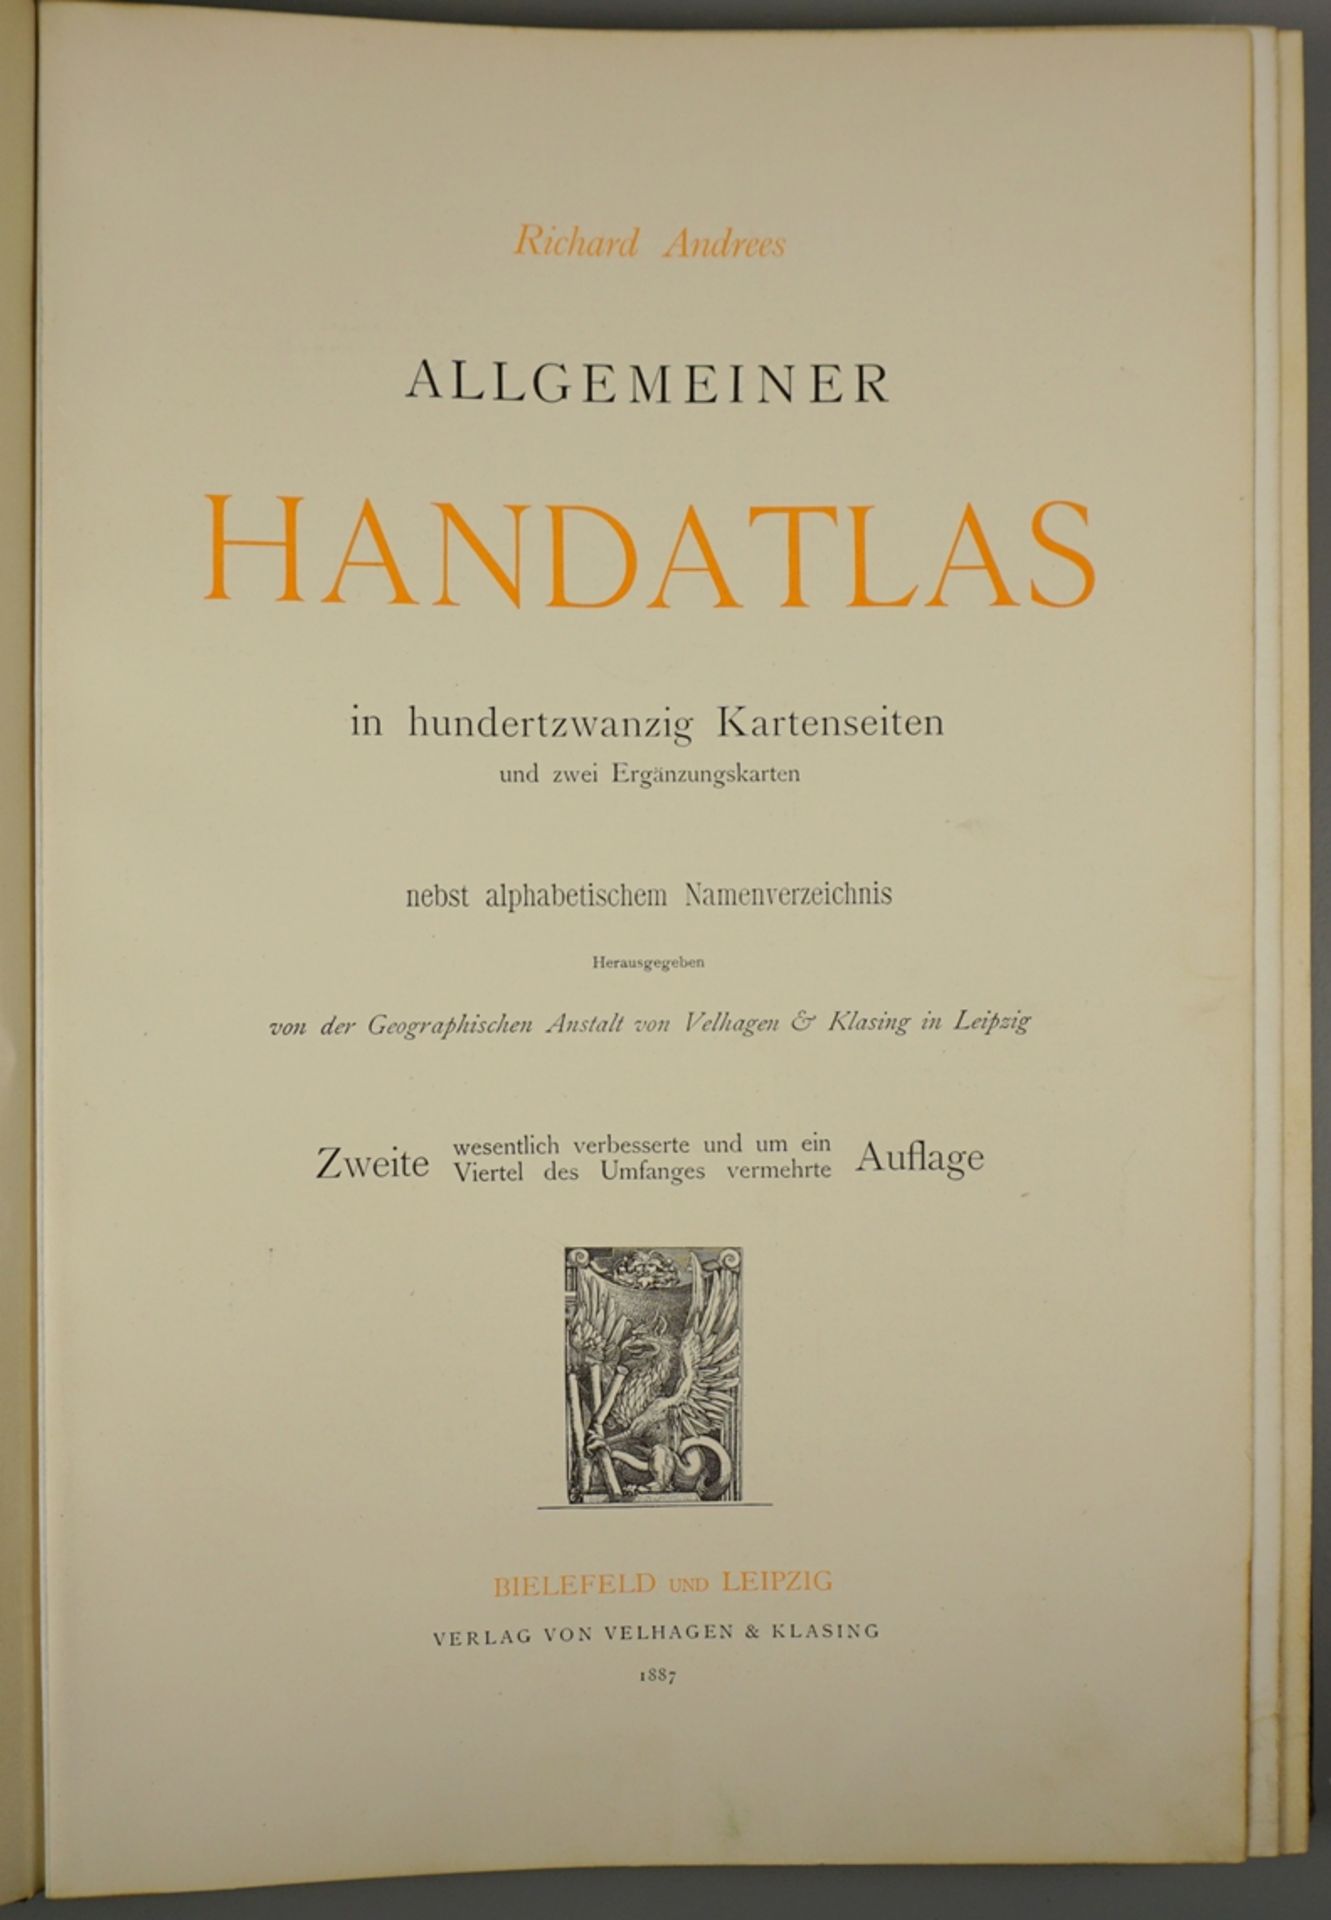 Richard Andrees Allgemeiner Handatlas, 1887 - Bild 2 aus 3